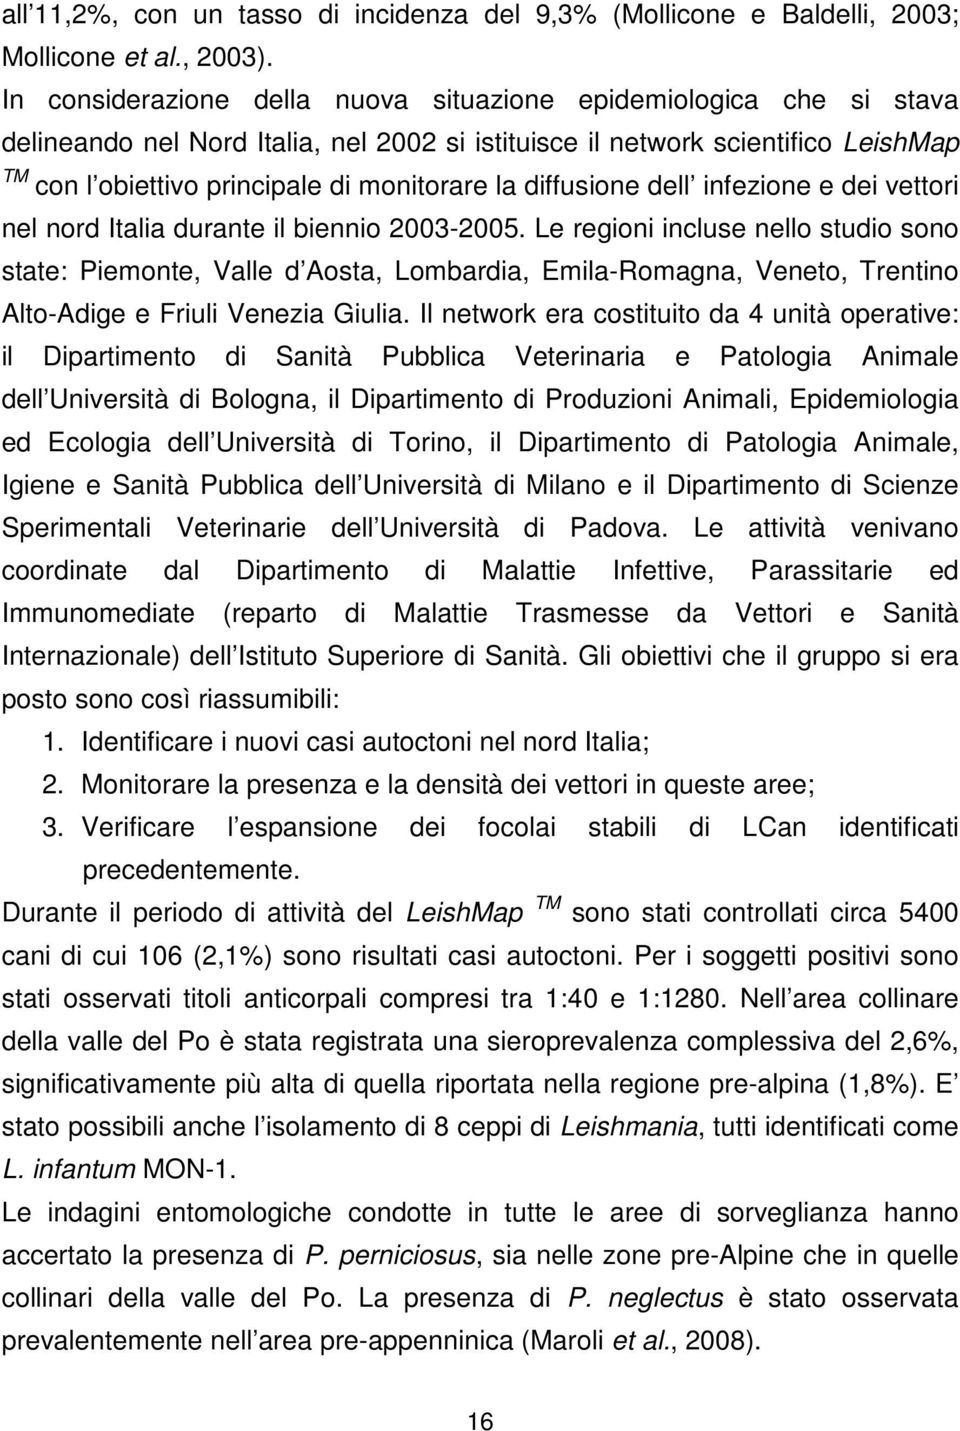 diffusione dell infezione e dei vettori nel nord Italia durante il biennio 2003-2005.